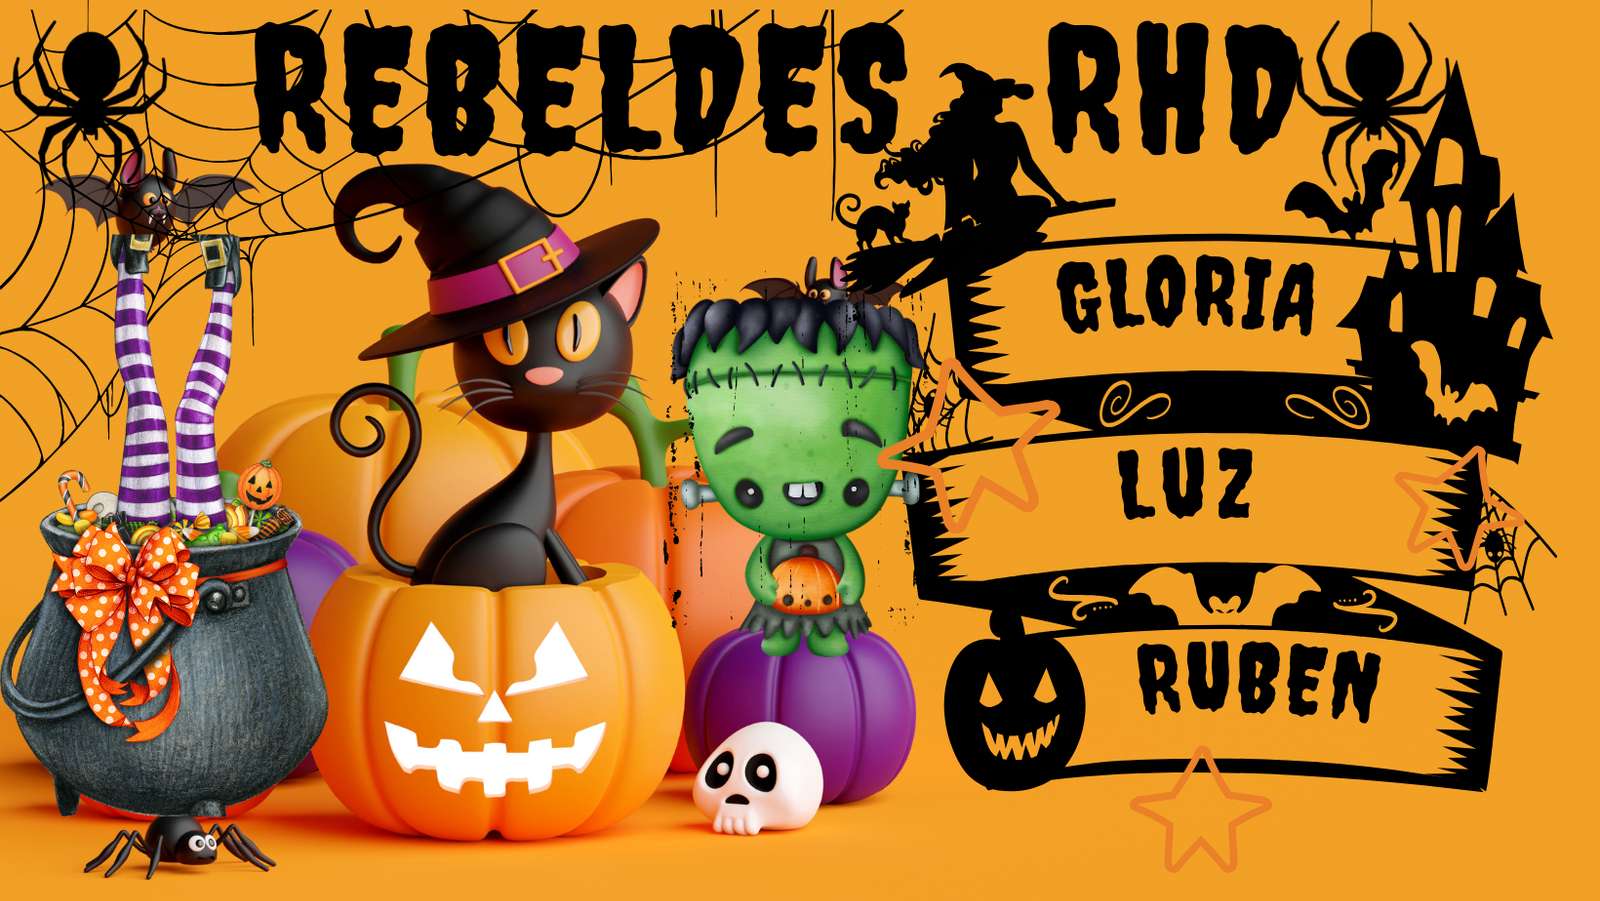 Rebels-RHD skládačky online